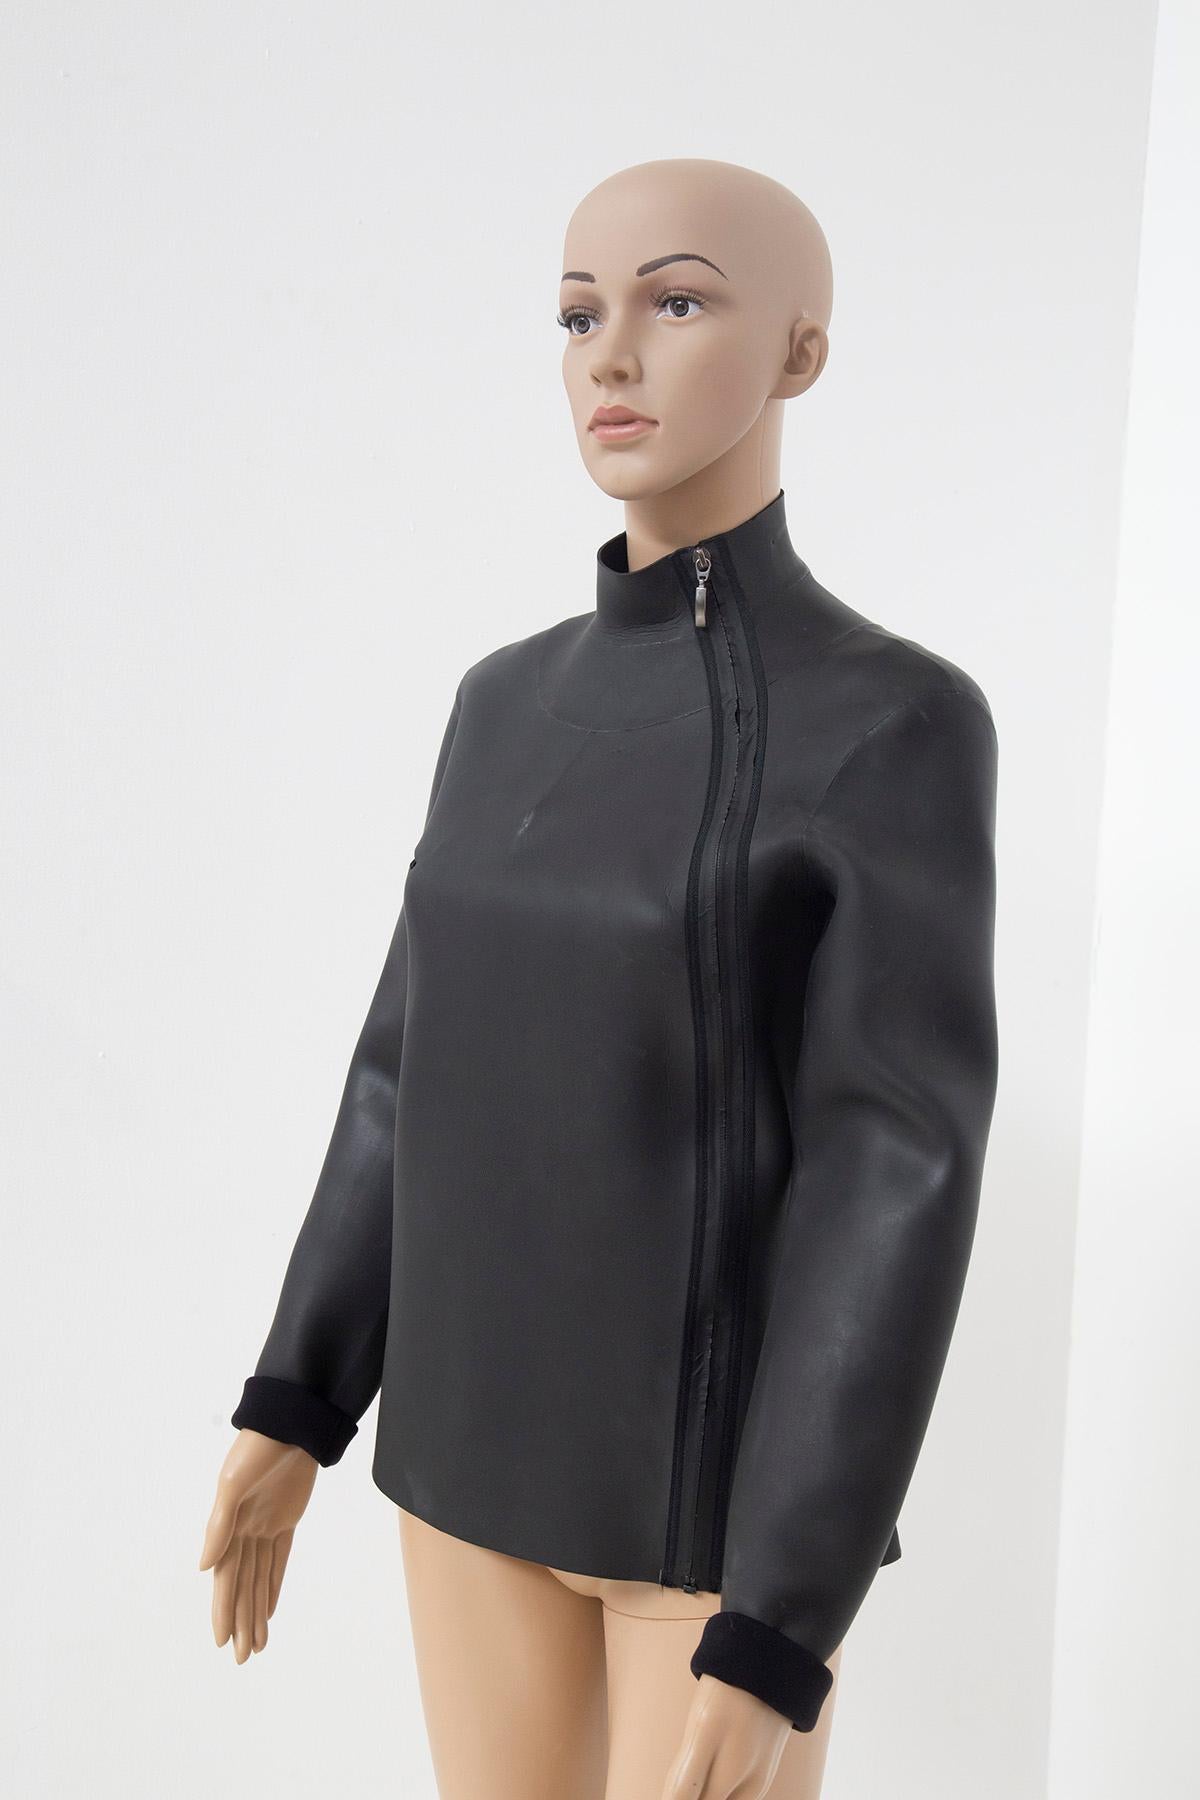 Black Jean Paul Gaultier modern suba/rubberized jacket For Sale